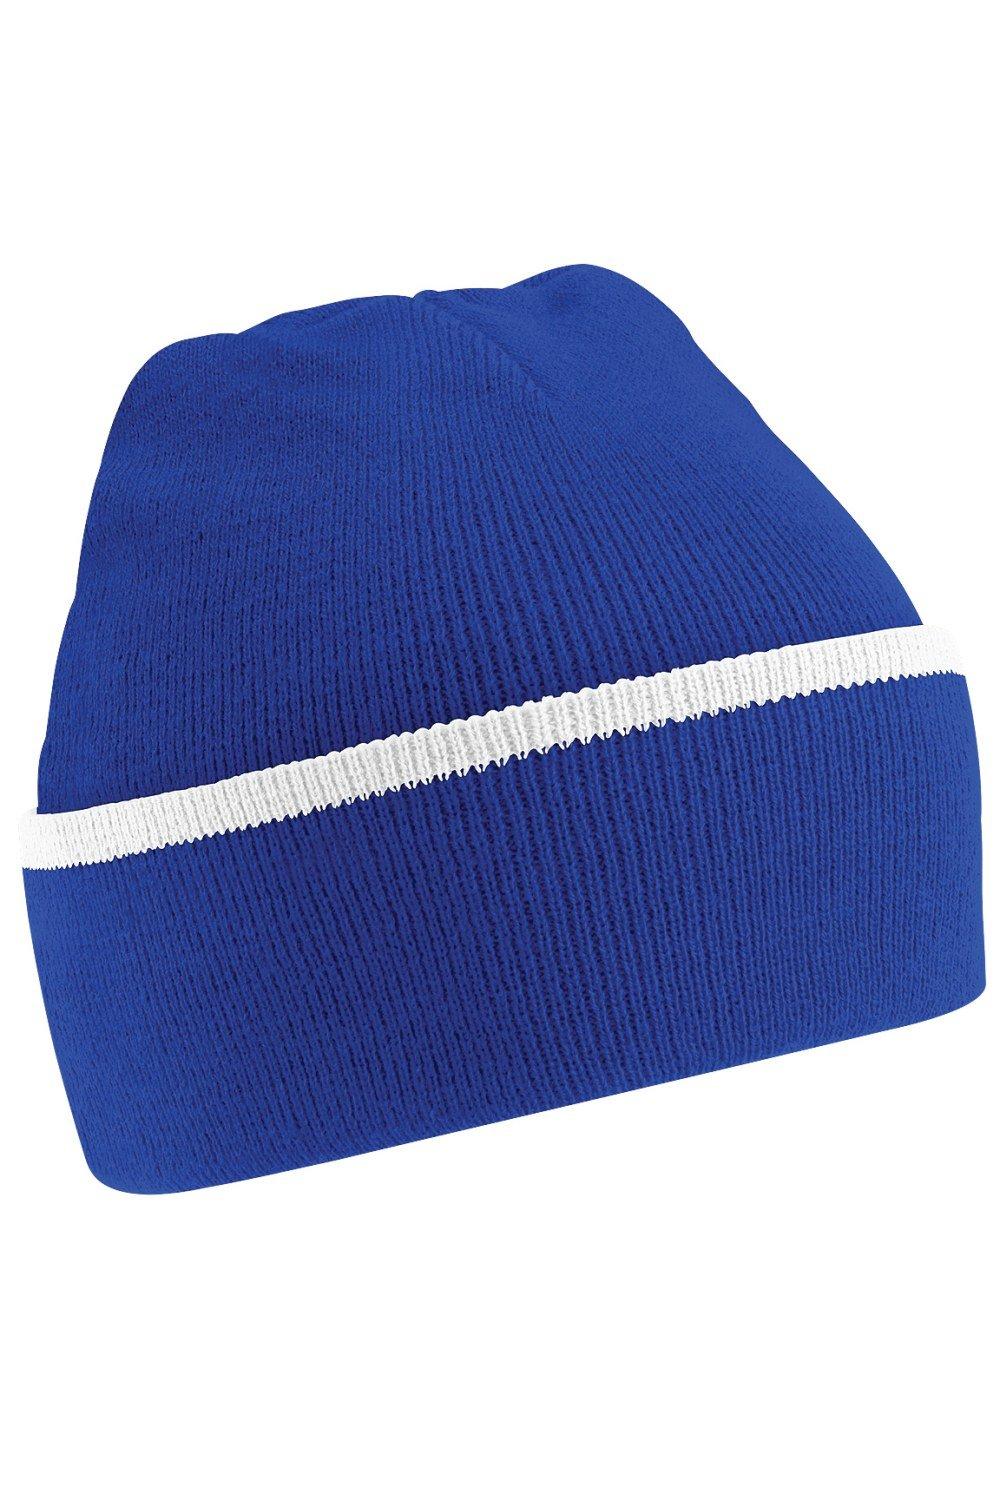 Вязаная зимняя шапка-бини Beechfield, синий шапка балаклава cokk зимняя вязаная шапка шапка маска зимняя шапочка бини